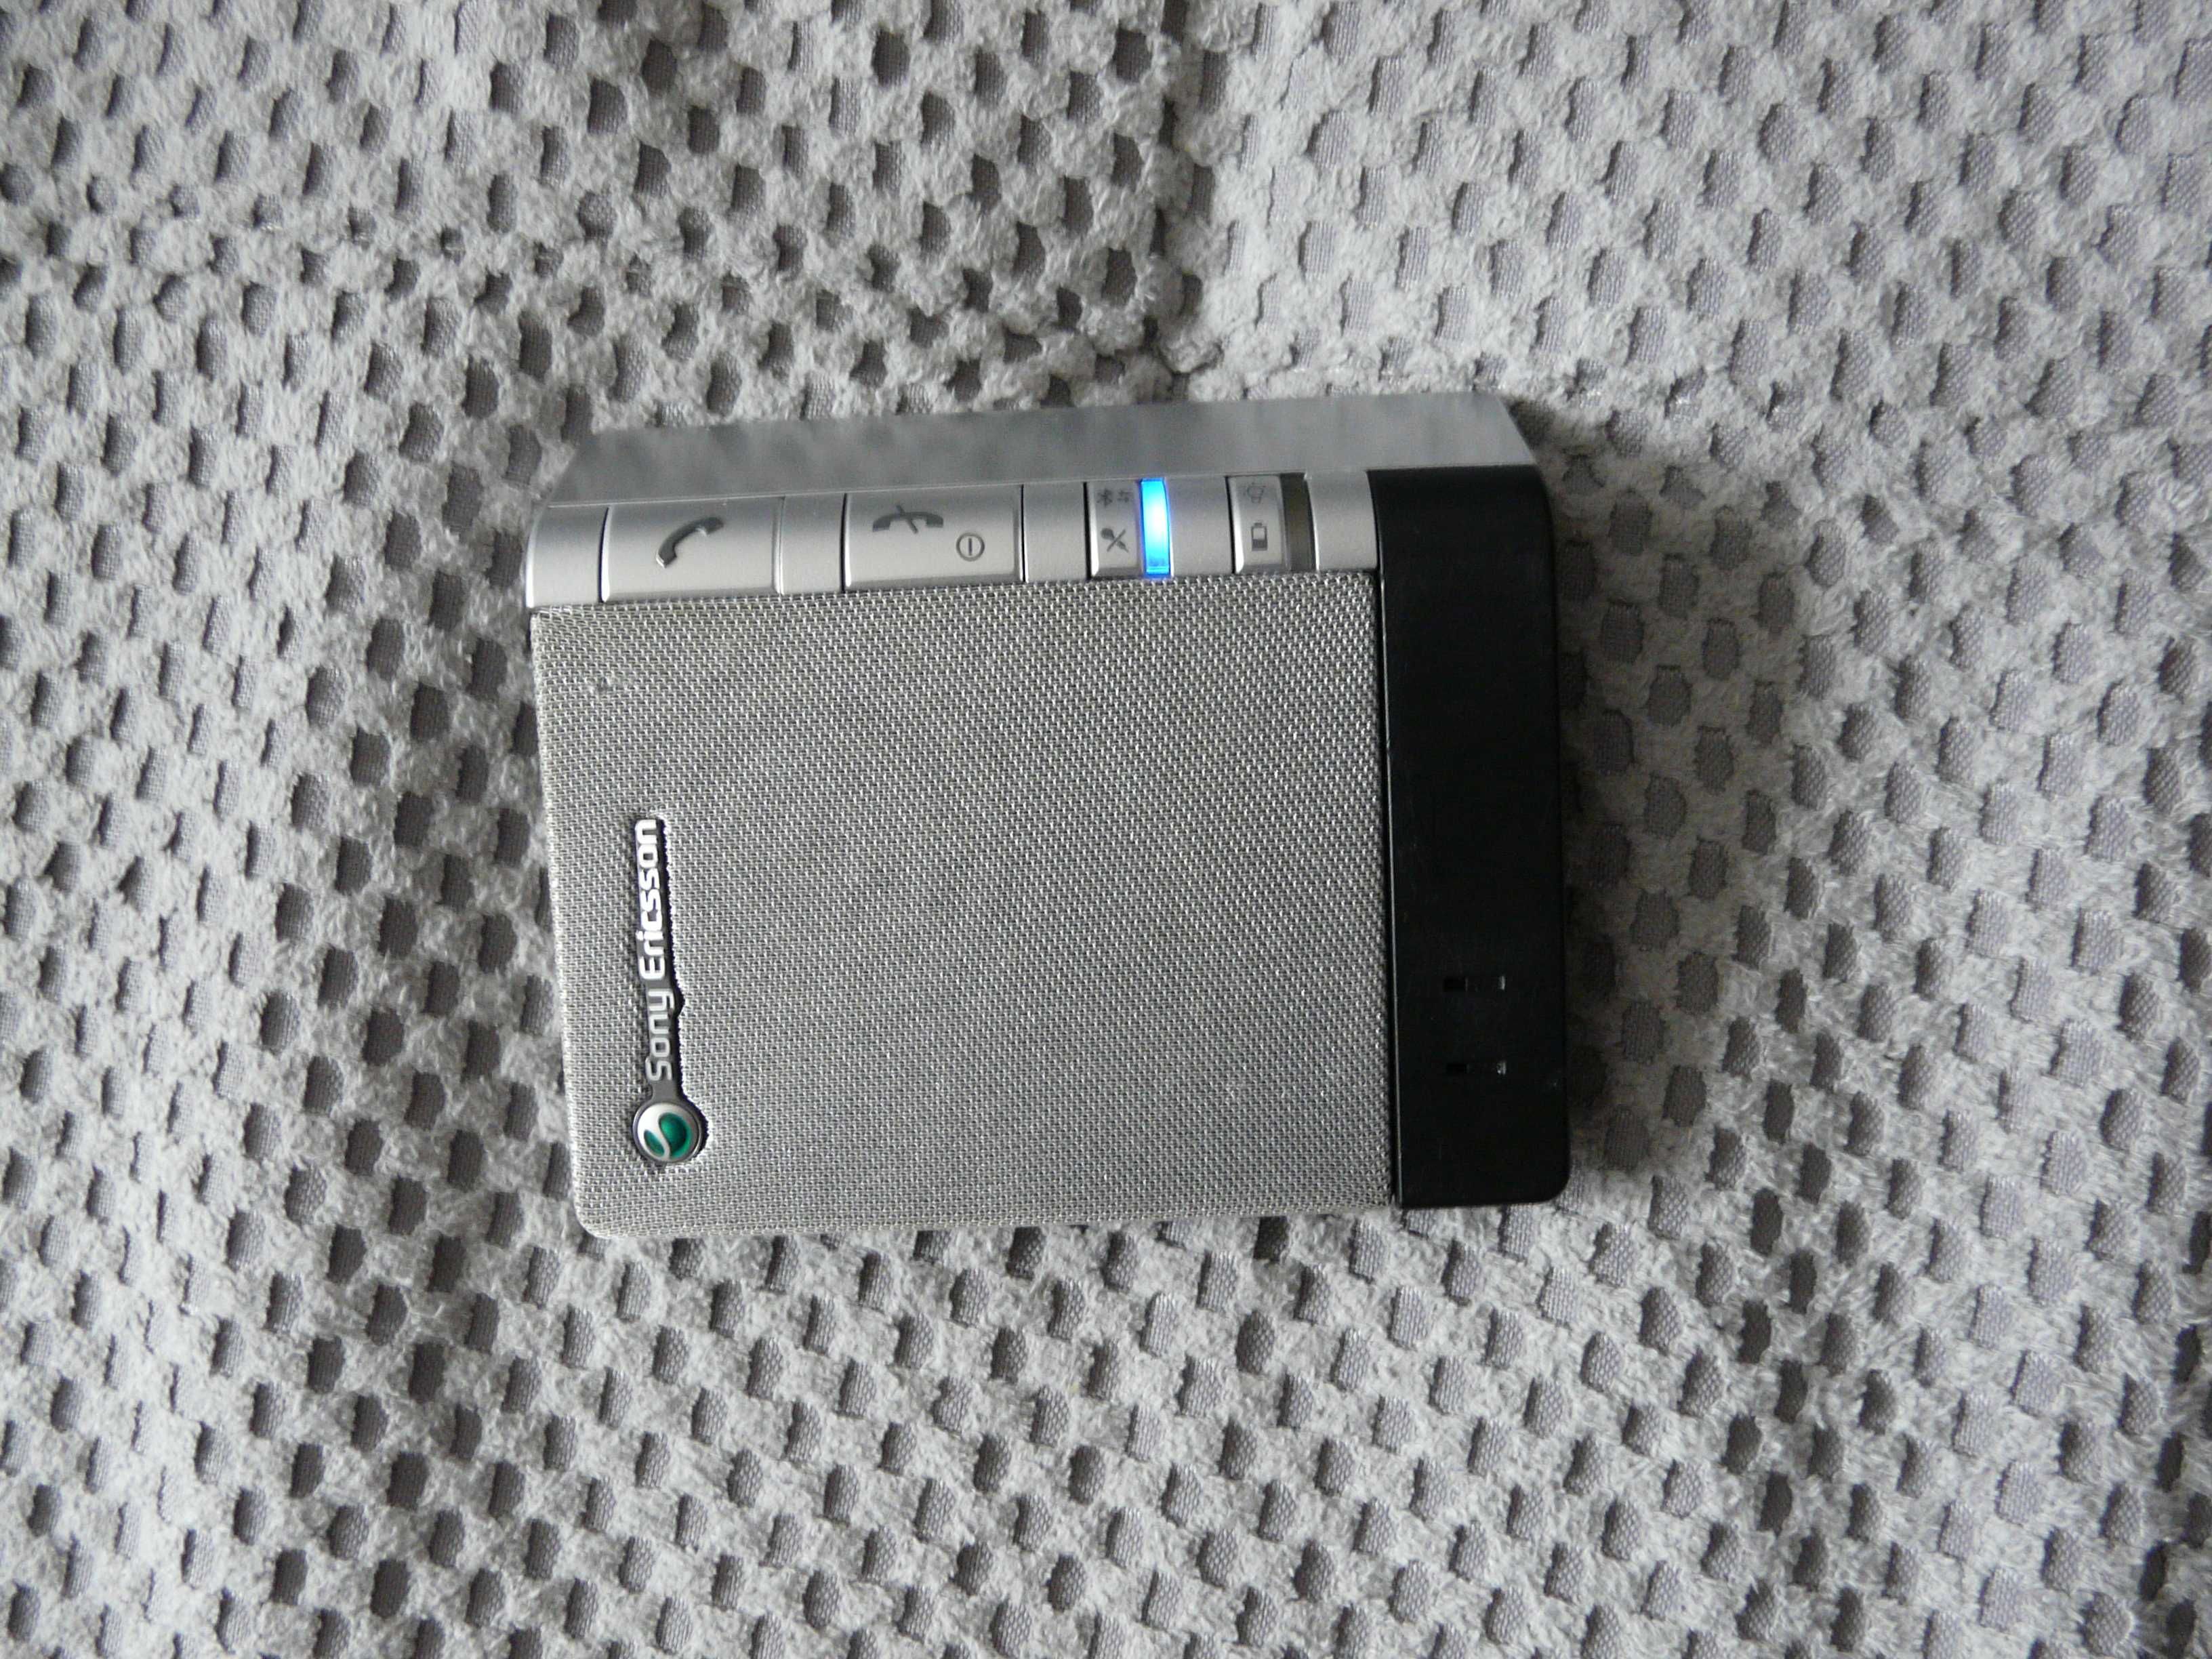 Zestaw głośnomówiący Sony Ericsson HCB-100 + ładowarka samochodowa